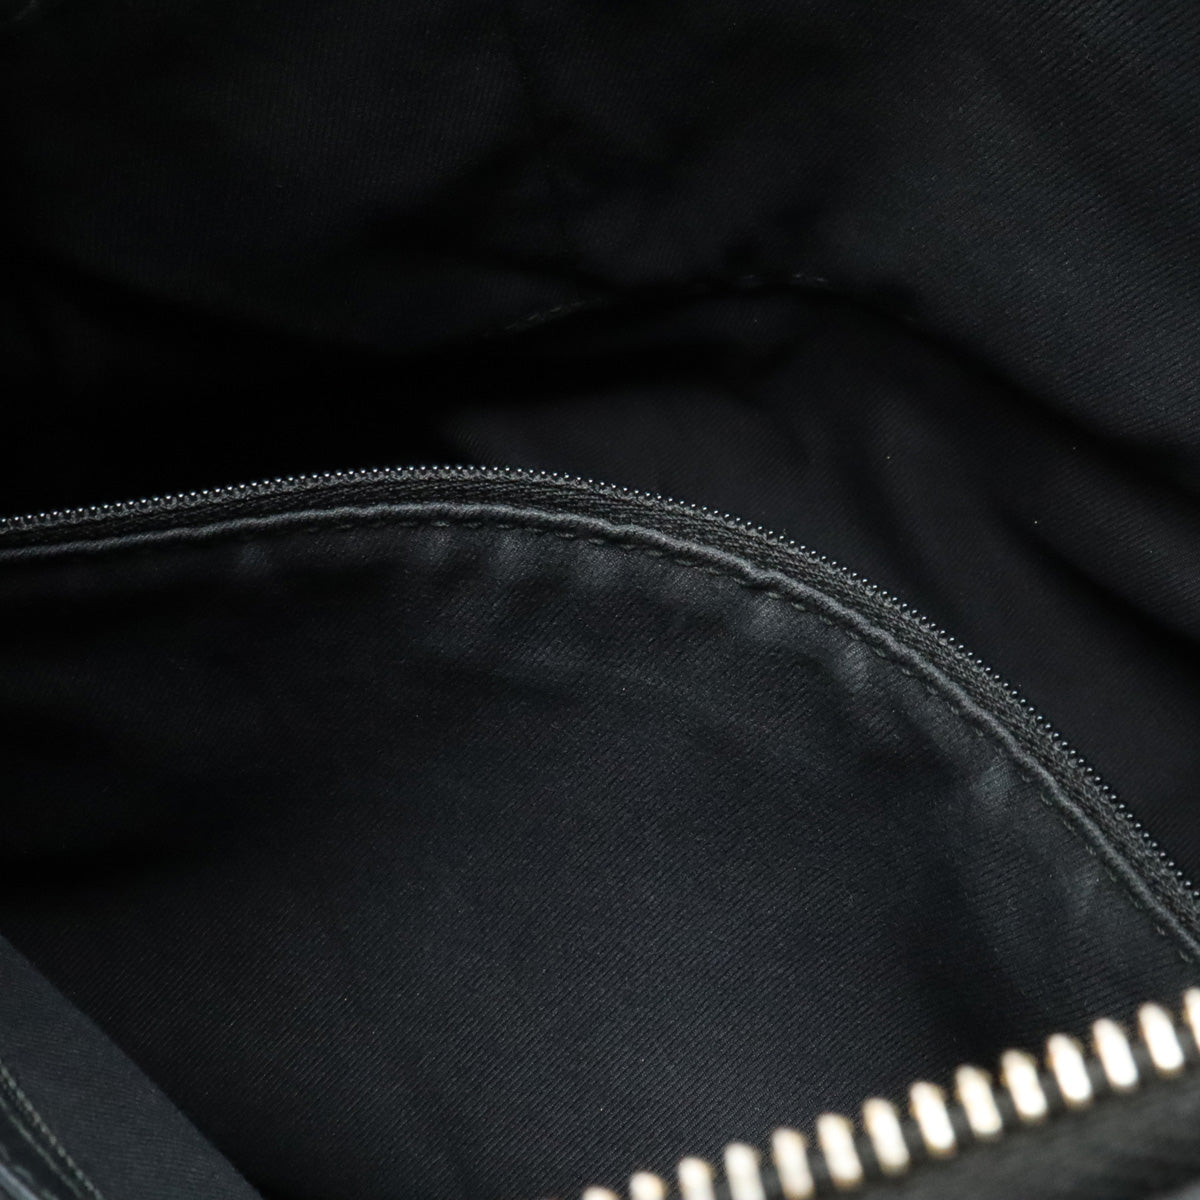 BVLGARI COLLEZIONE COLLEZIONE 單肩挎包 半肩皮革 黑色 黑色 金色 鍍鋁